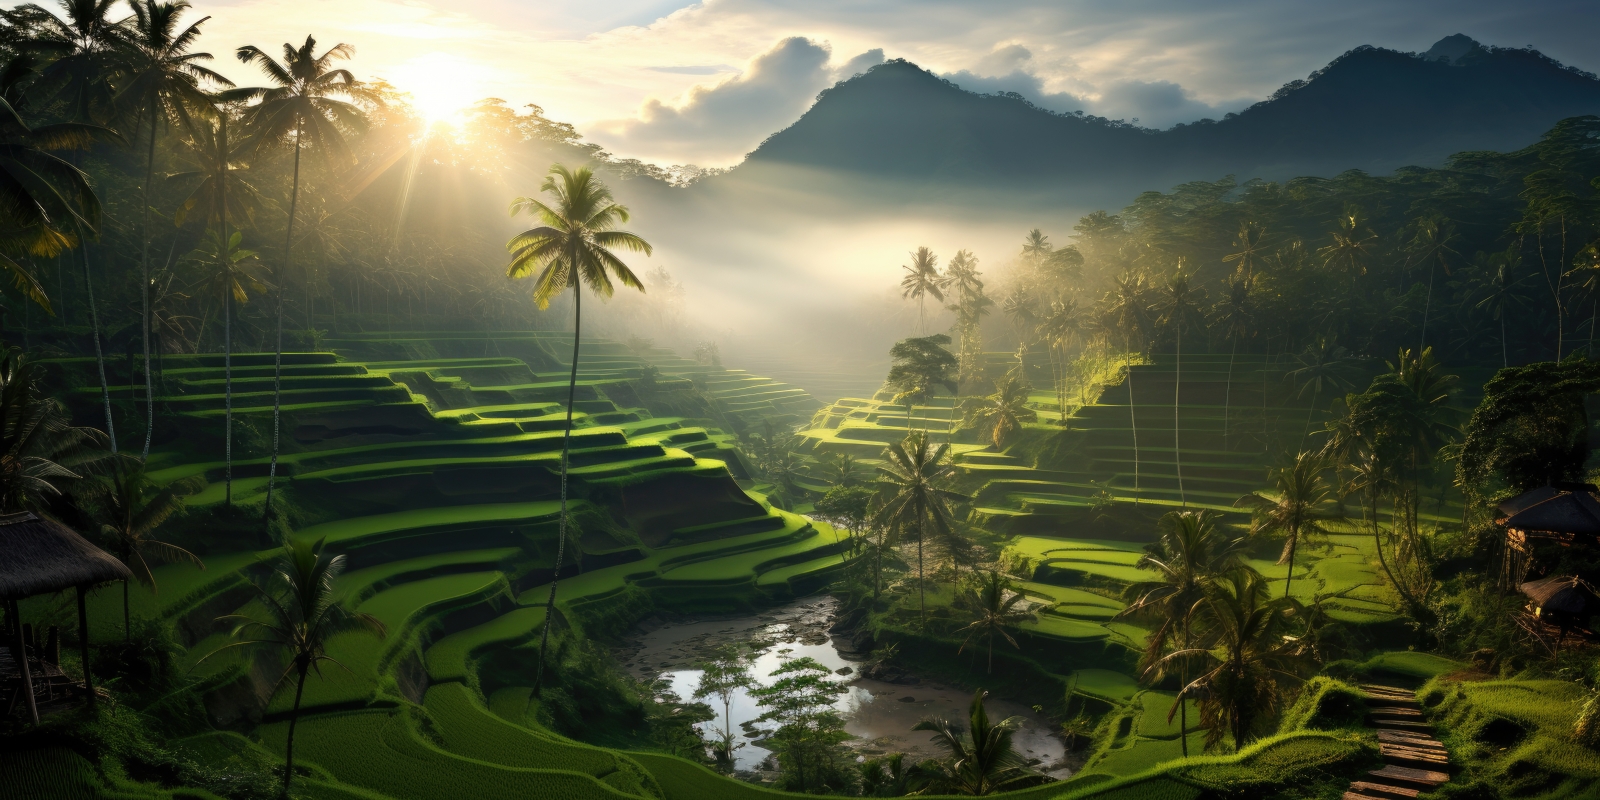 Преимущества жизни и приобретения недвижимости на Бали